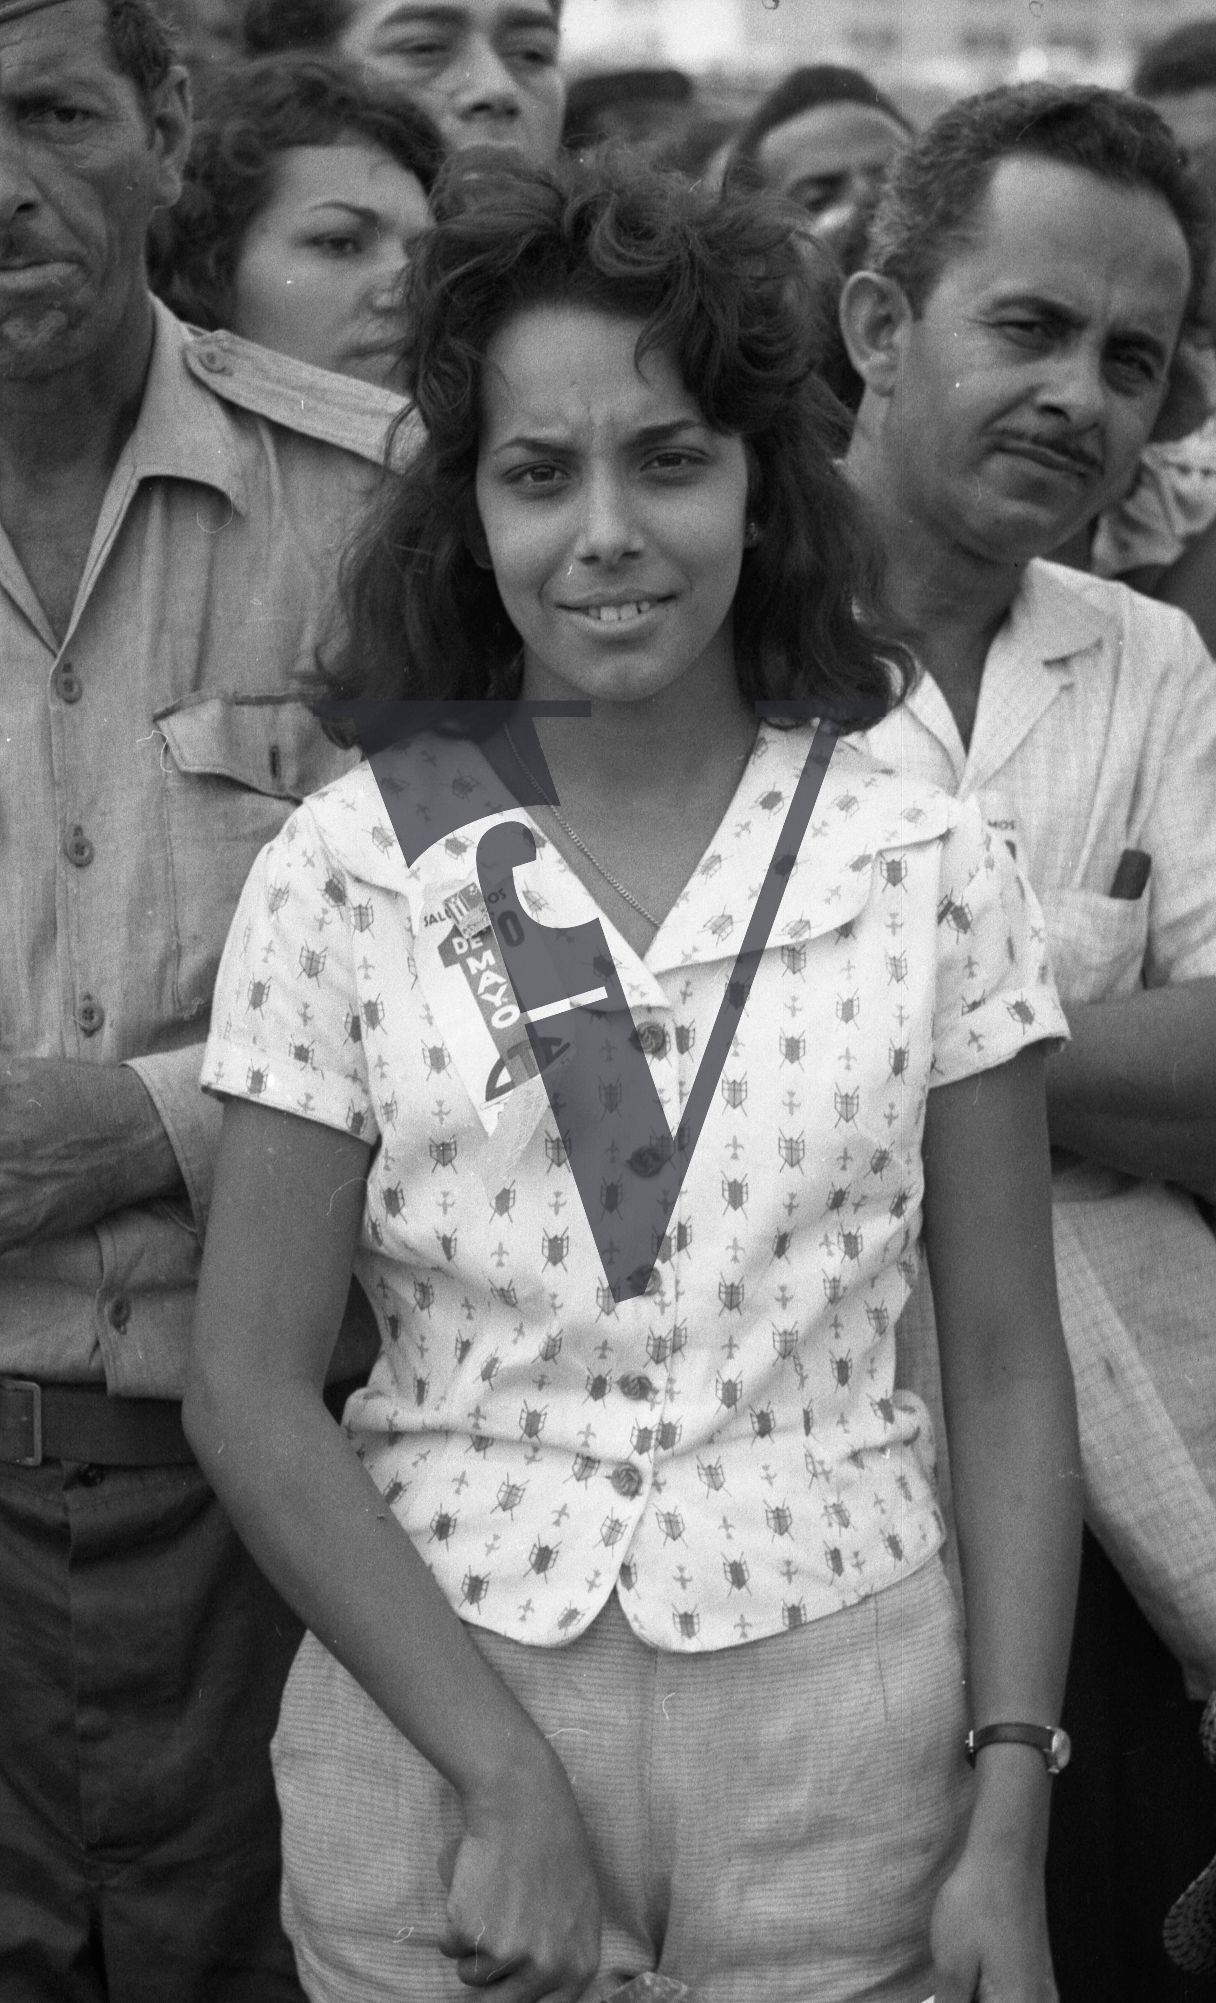 Cuba, Havana, May 1st, woman onlooker, portrait.